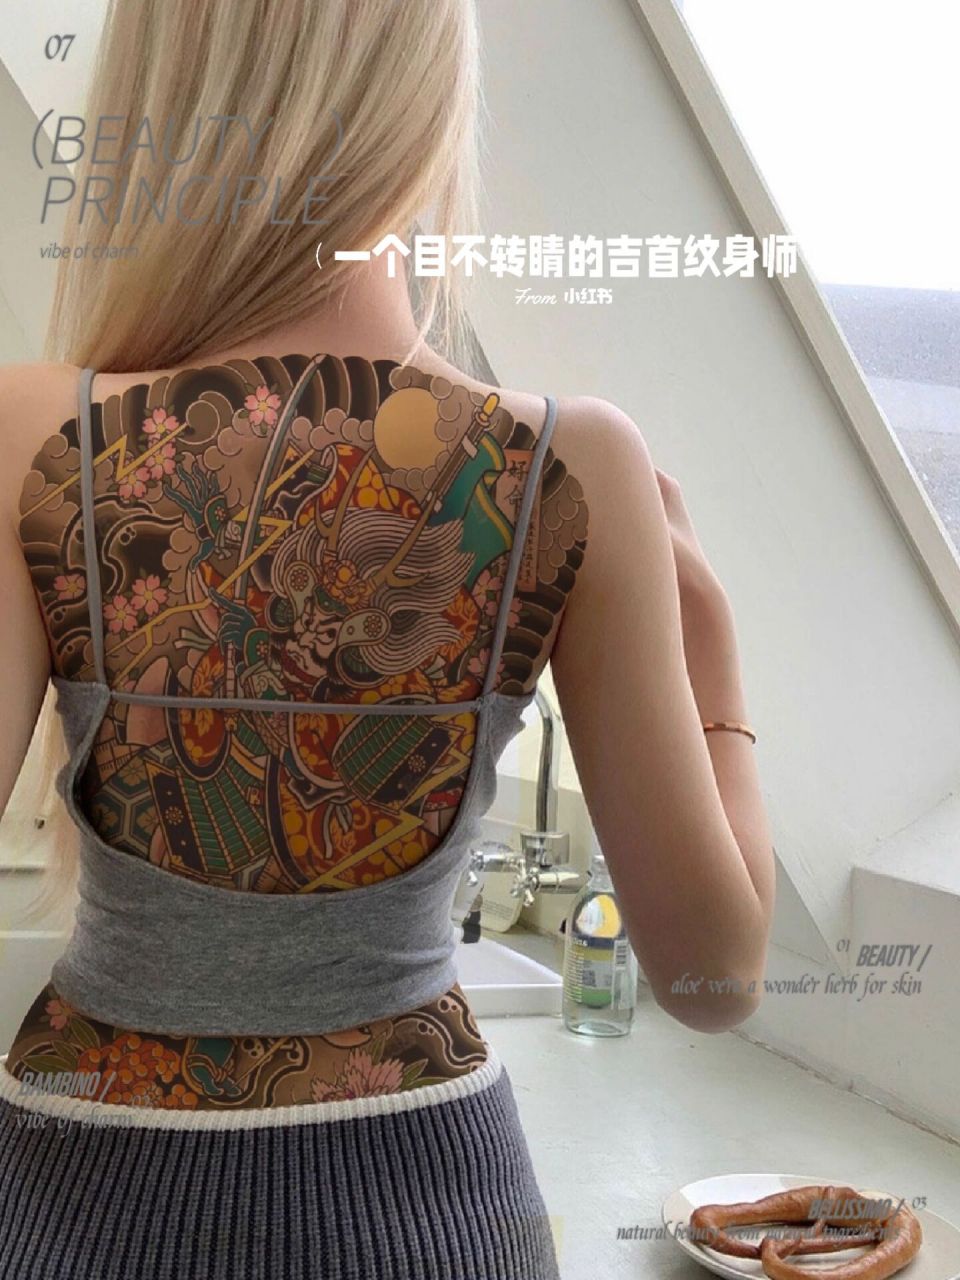 女生的日式传统满背纹身也可以很炸裂哦